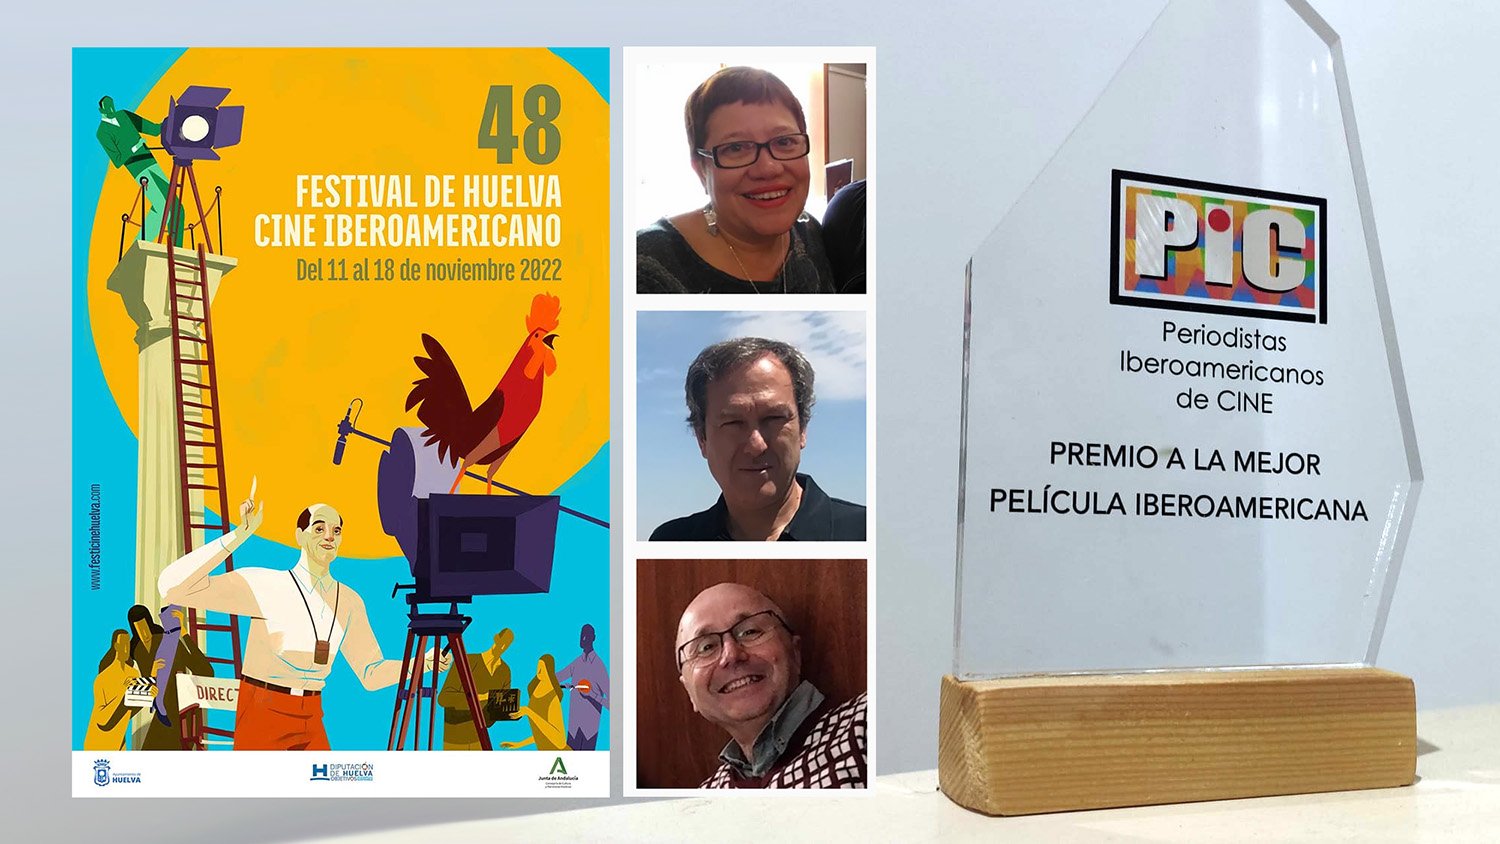 PIC entregará premio en Festival de Huelva